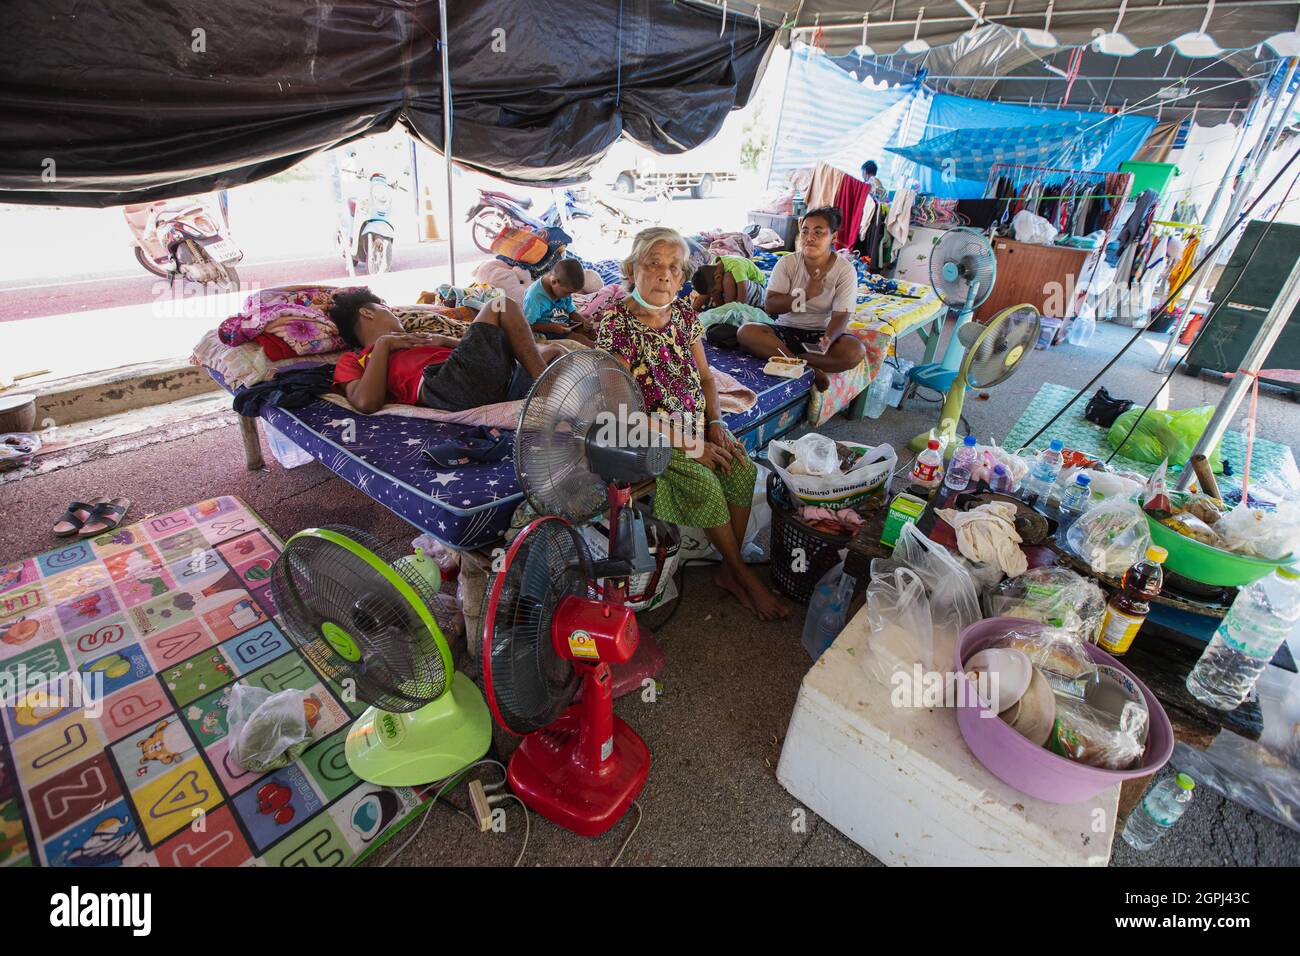 Lopuri, Thaïlande. 29 septembre 2021. Les habitants de Lophuri vivent dans une immense tente dans la rue, au lendemain. Après la tempête de Dianmu, 20 provinces ont été touchées. Le gouvernement thaïlandais a également annoncé que plus de 55,000 ménages ont été touchés par des inondations. Lophuri est l'une des provinces touchées et que la situation est étroitement surveillée. Crédit : SOPA Images Limited/Alamy Live News Banque D'Images